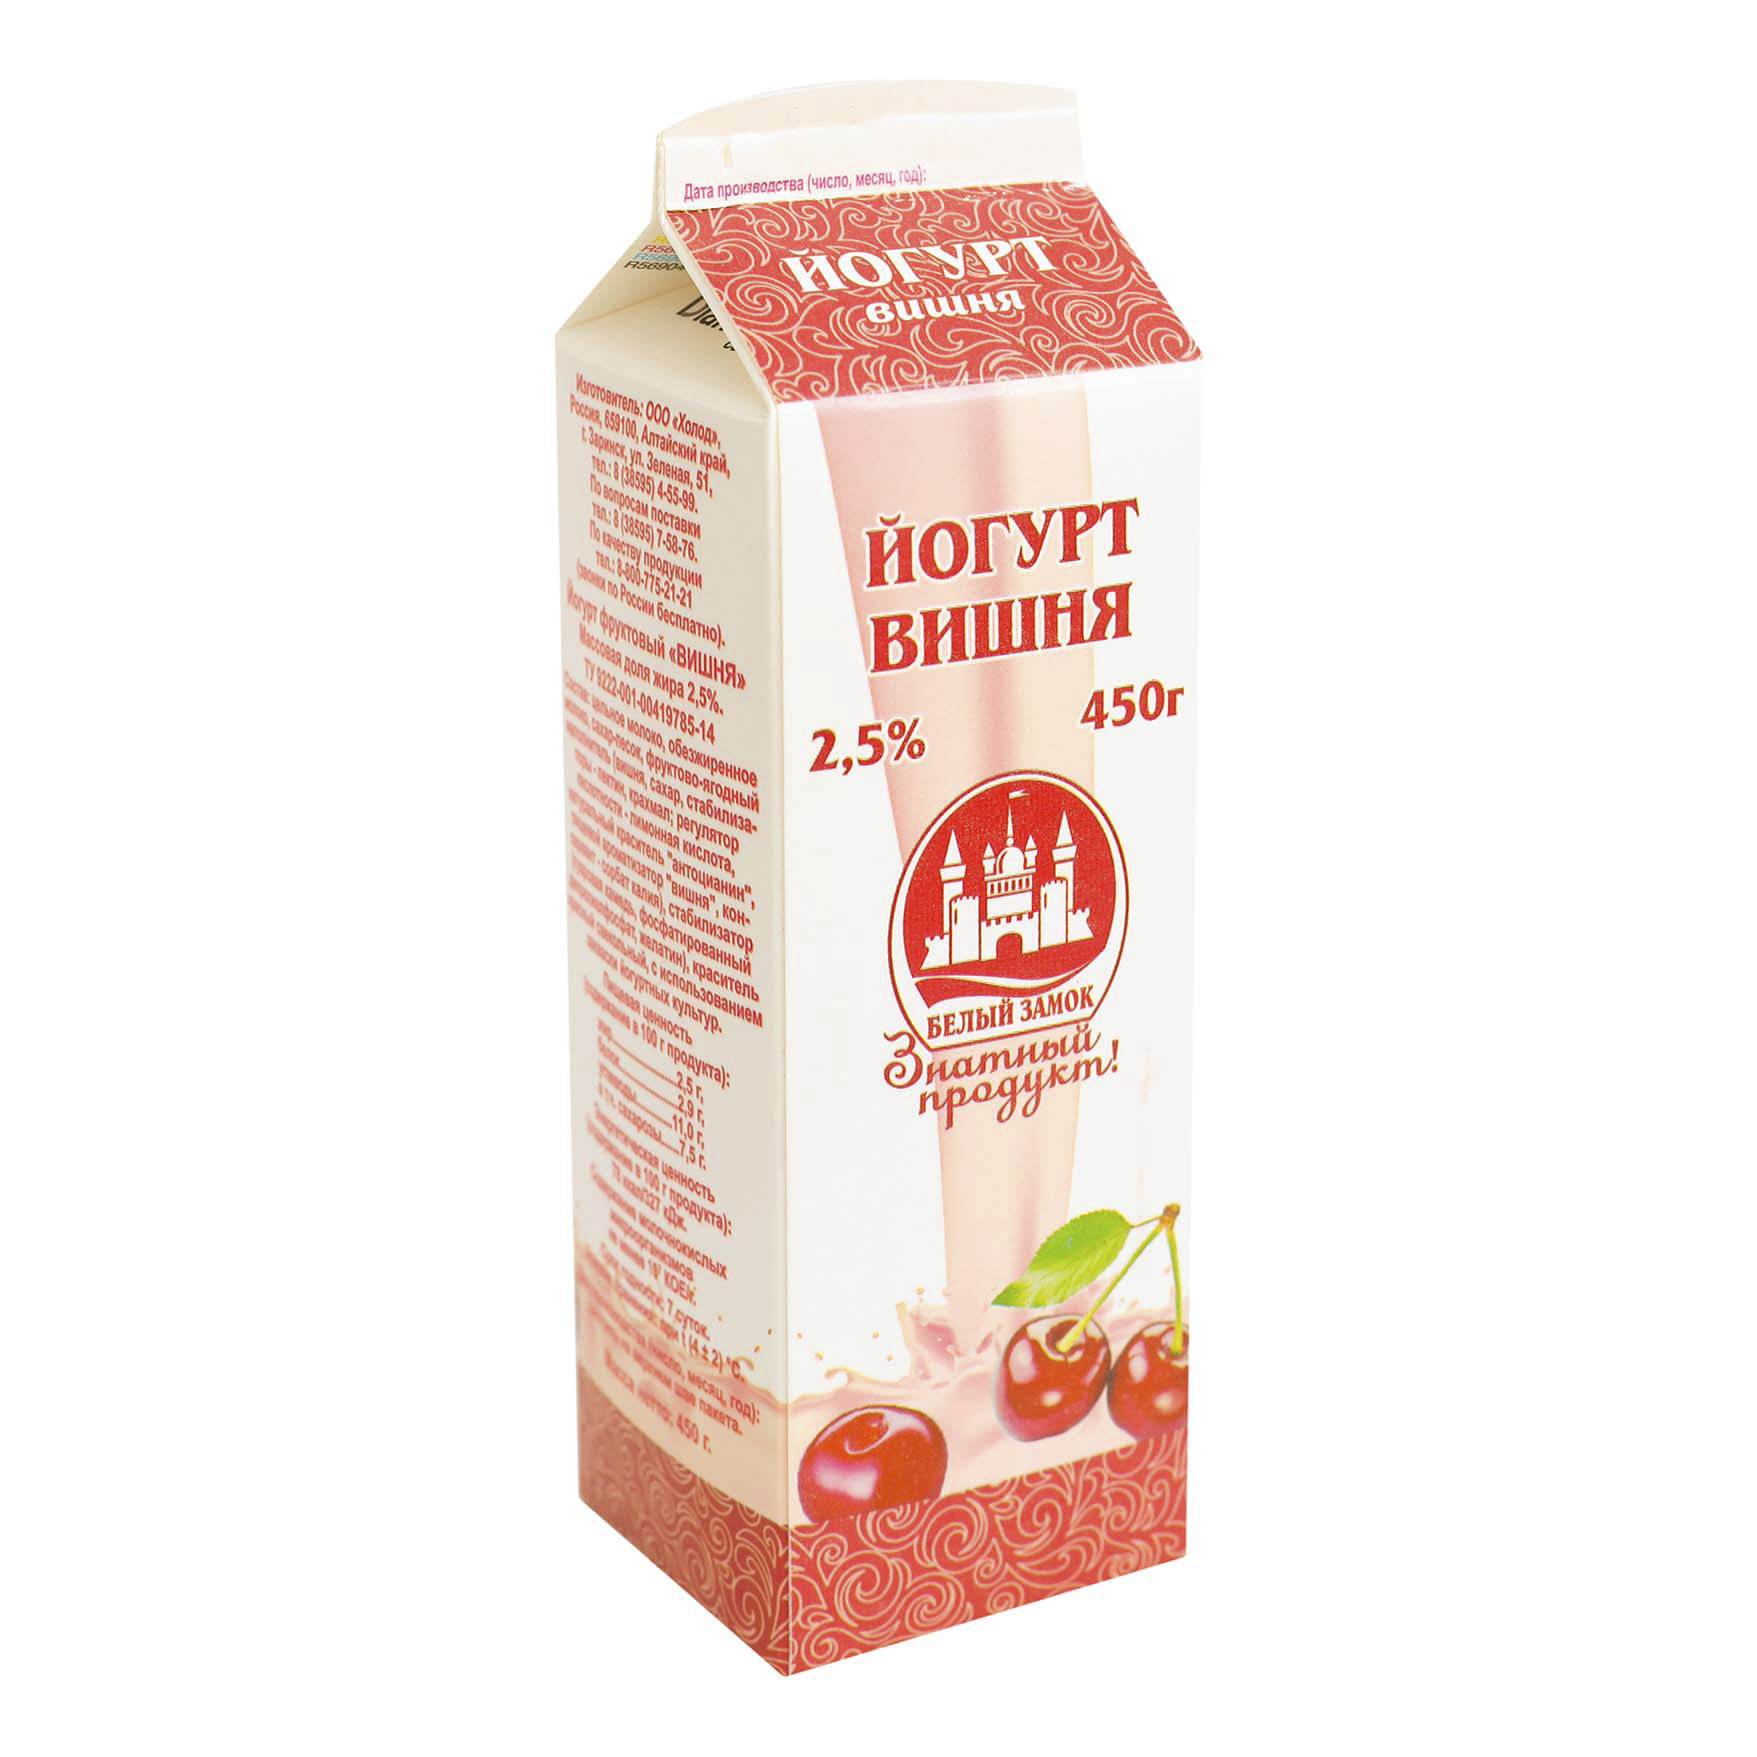 фото Питьевой йогурт белый замок вишня 2,5% бзмж 450 г